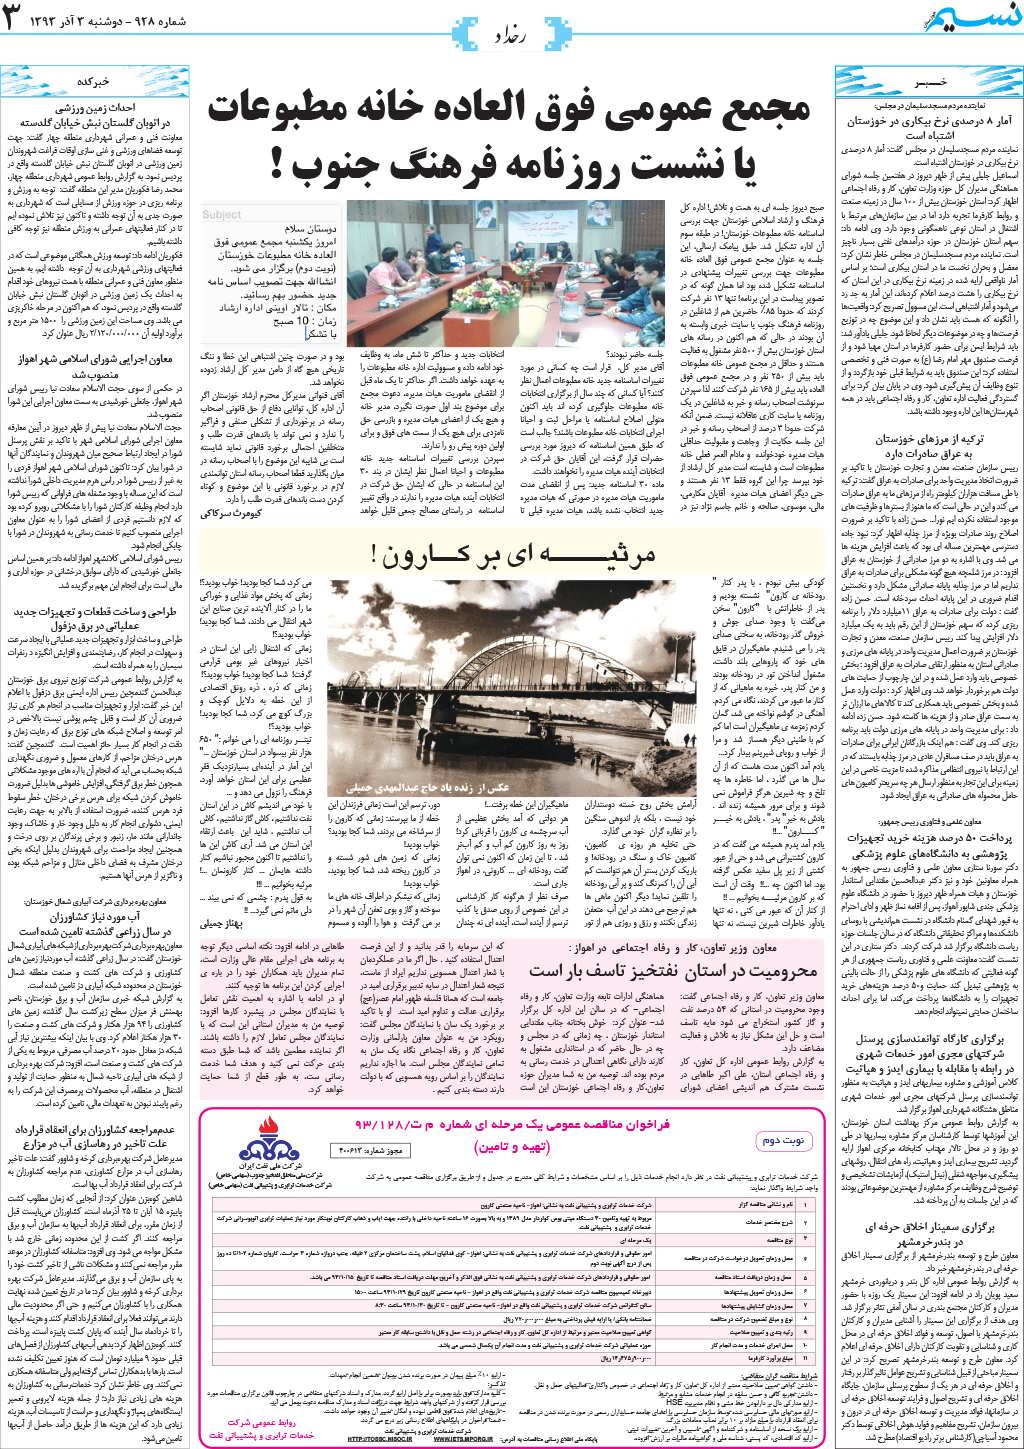 صفحه رخداد روزنامه نسیم شماره 928